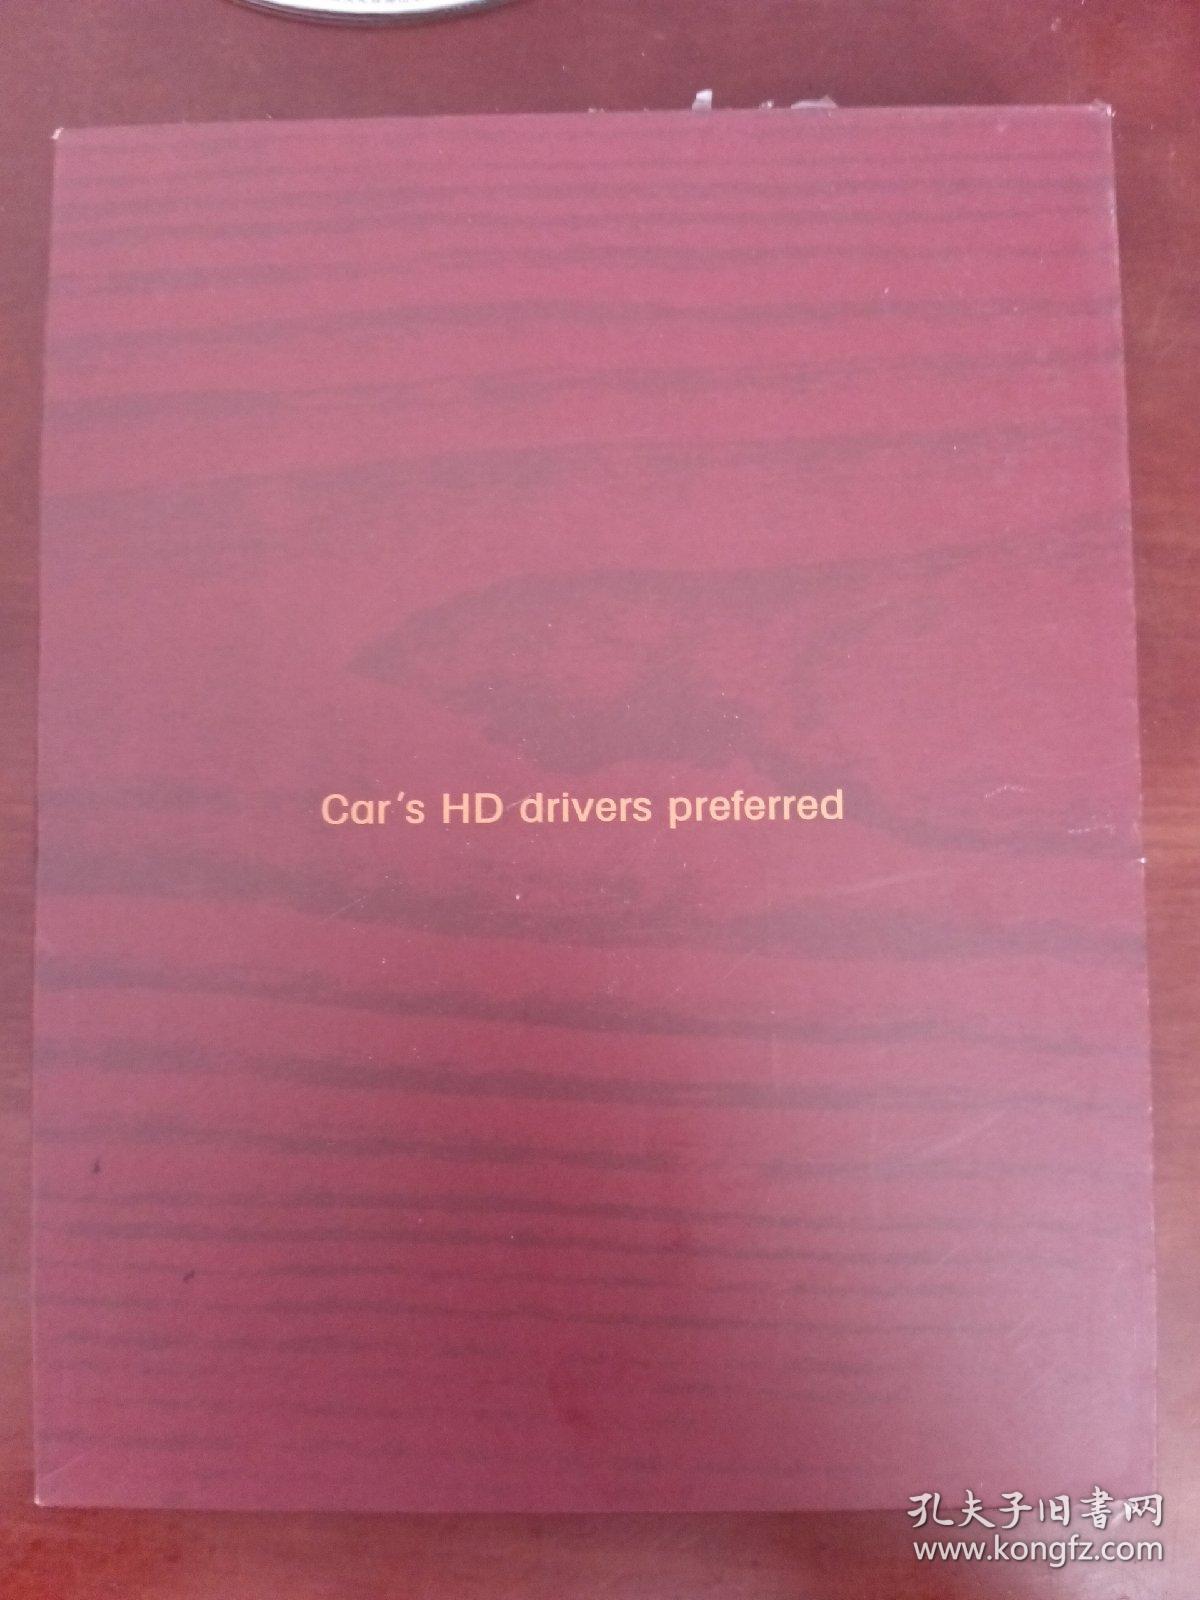 无损音质 高清画面 车载高清 司机首选 光盘2碟装DVD 盒装